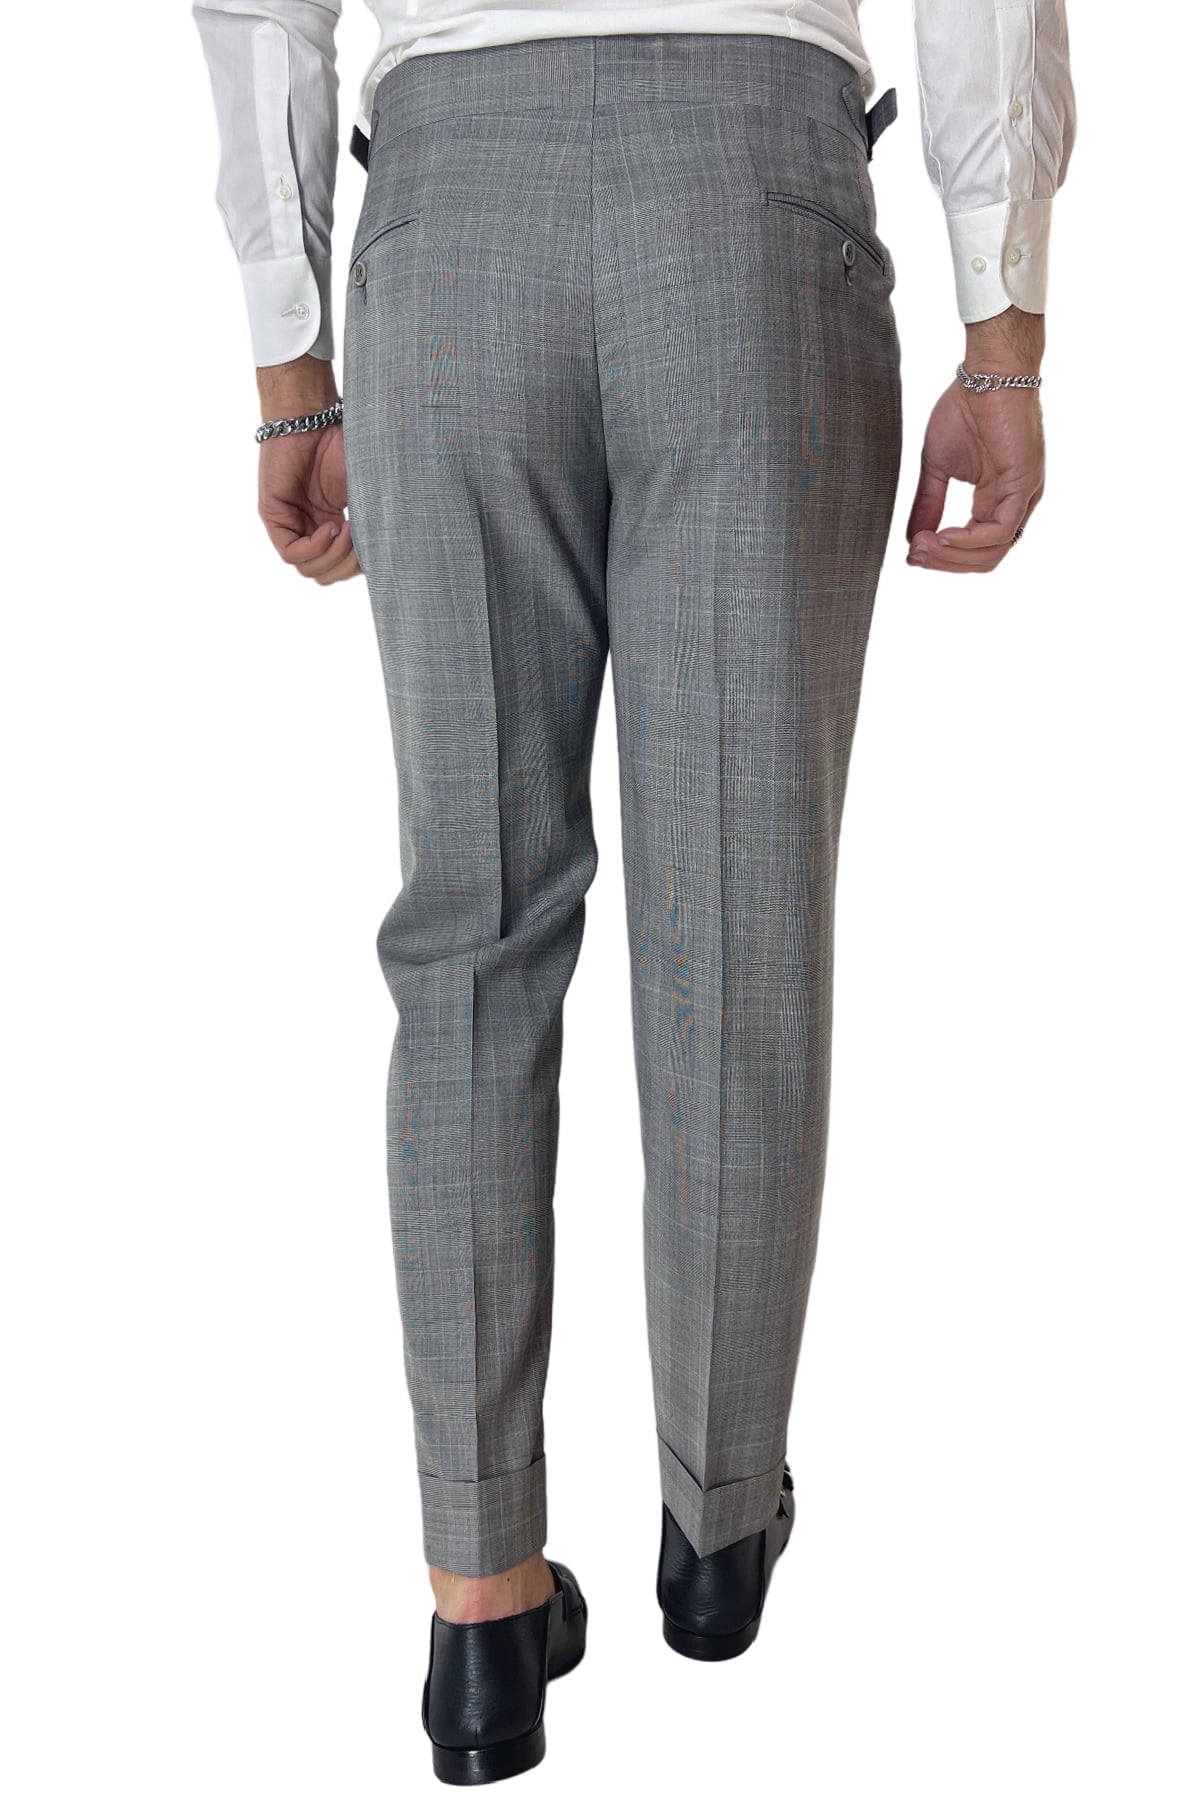 Pantalone uomo grigio fantasia principe di galles in fresco lana 120's vita alta con pinces fibbie laterali e risvolto 4cm